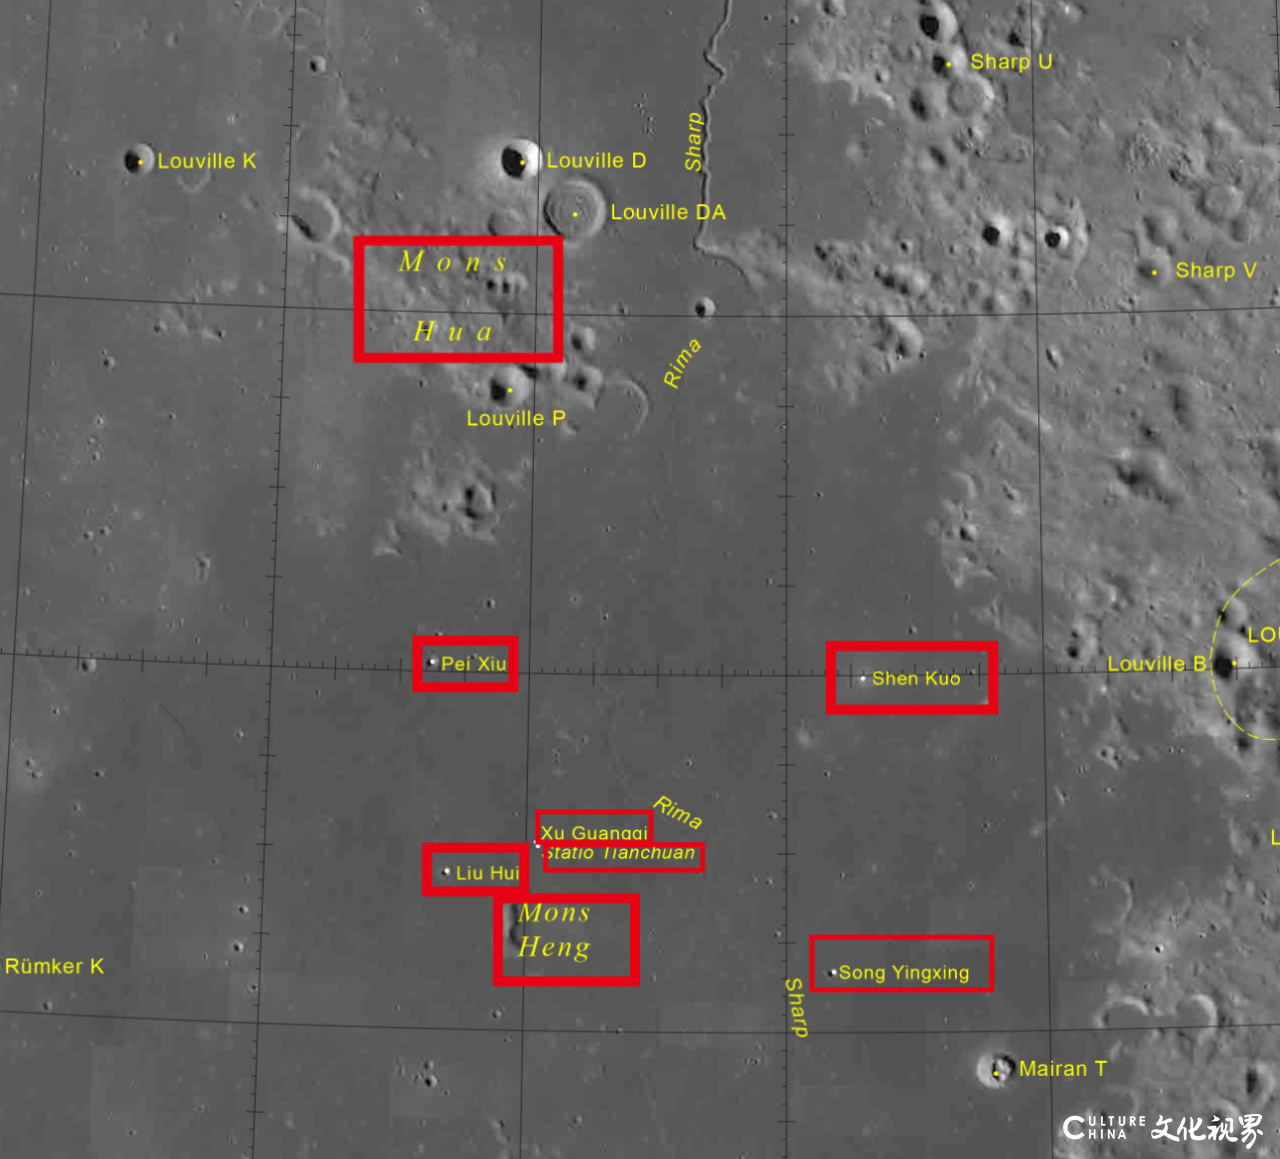 月球表面新增8个中国地名，嫦娥五号任务创造五项中国首次